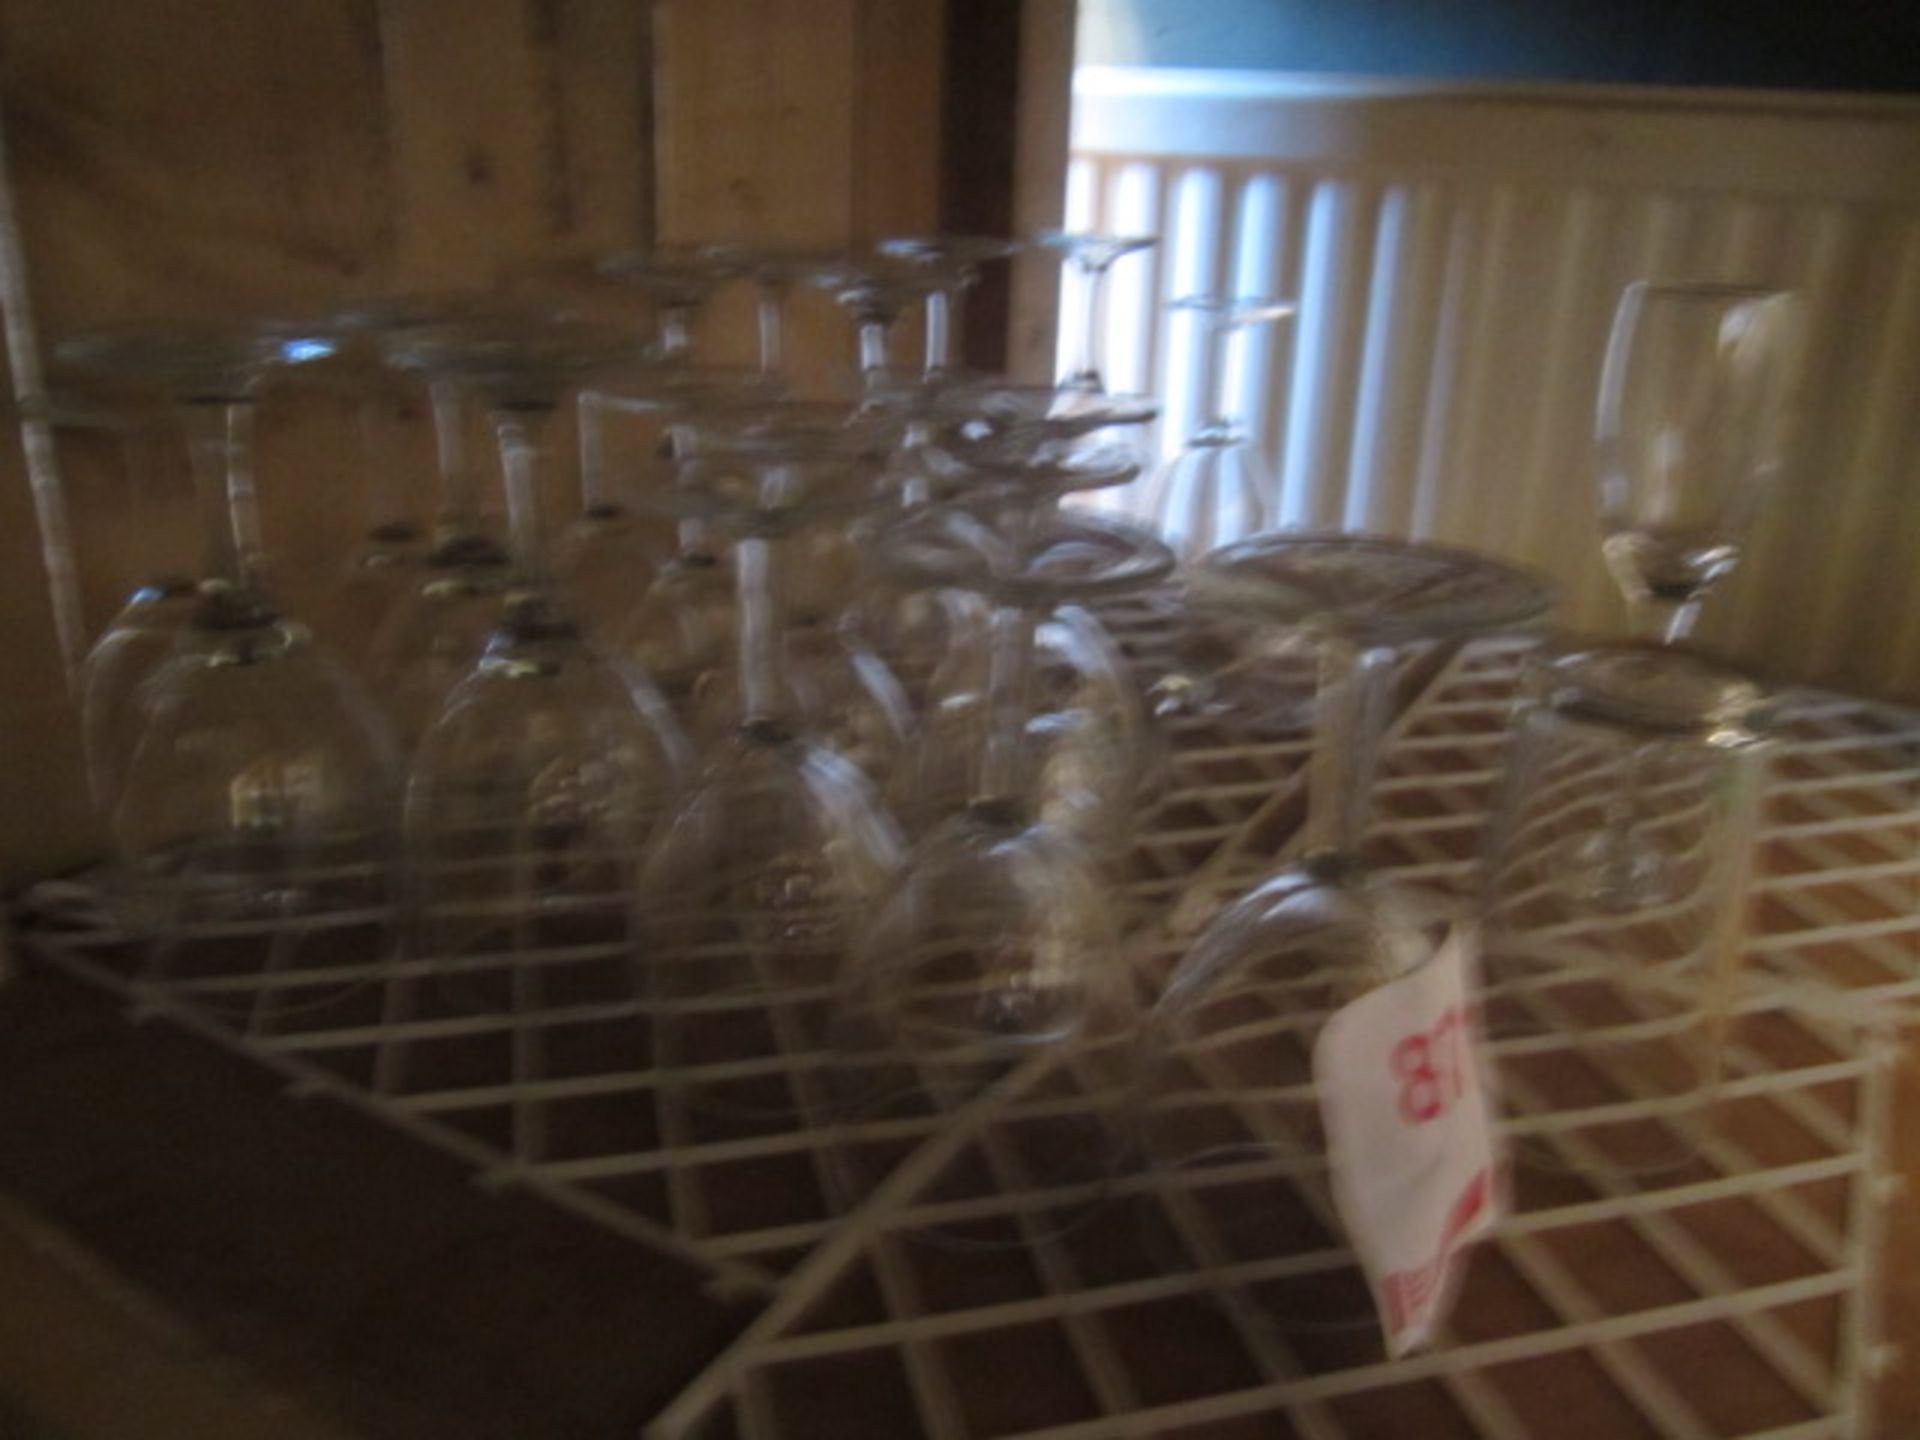 Quantity of assorted glassware